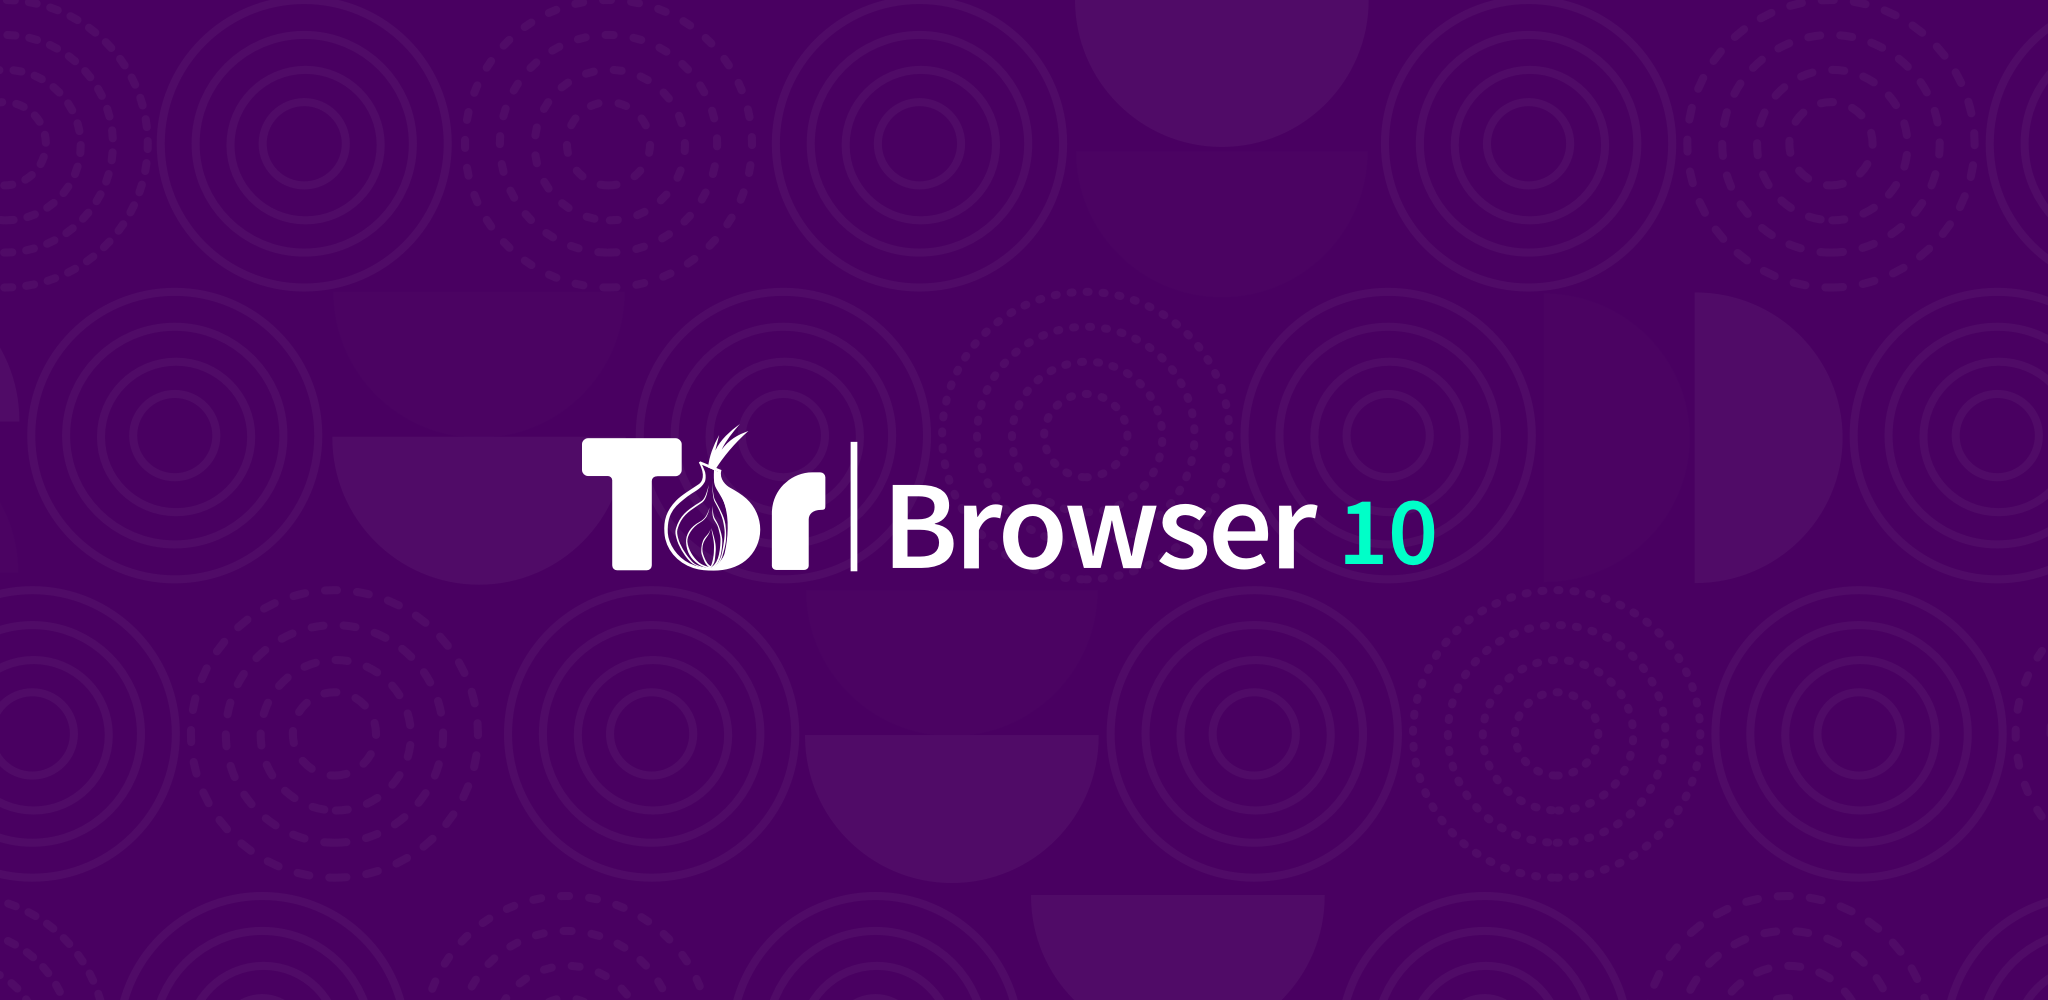 Скачать tor browser bundle rus для windows mega tor browser portable торрент mega